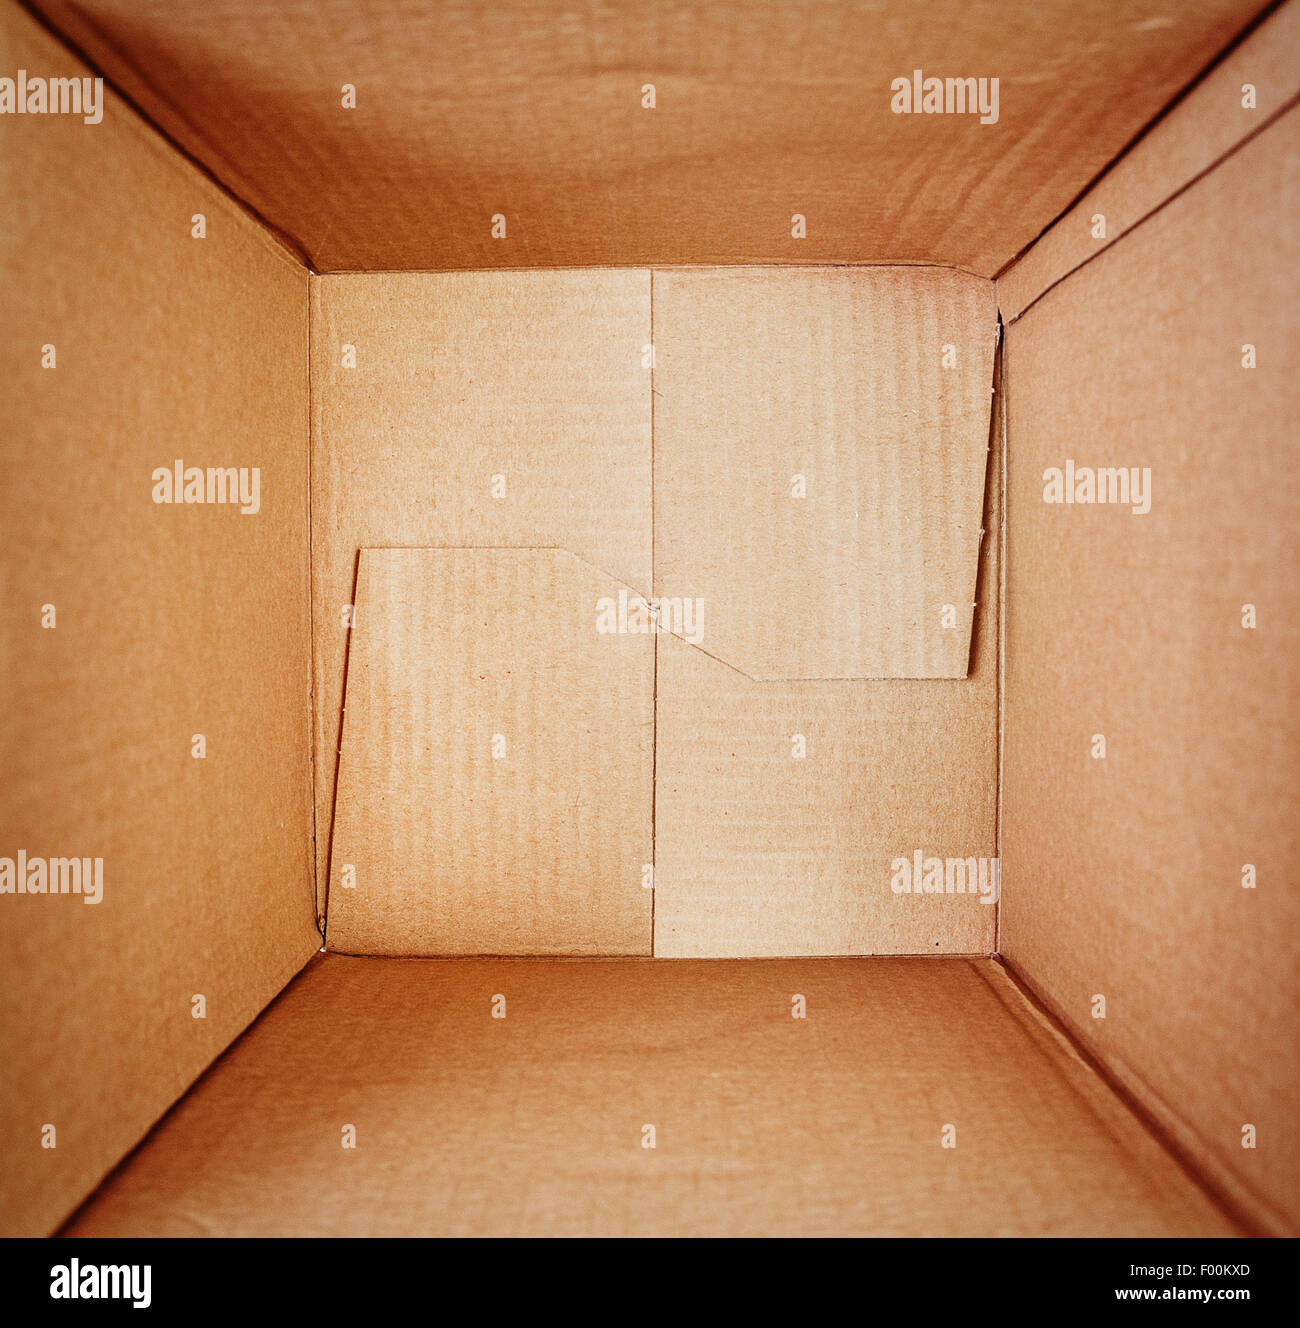 Empty cardboard box, inside view Stock Photo